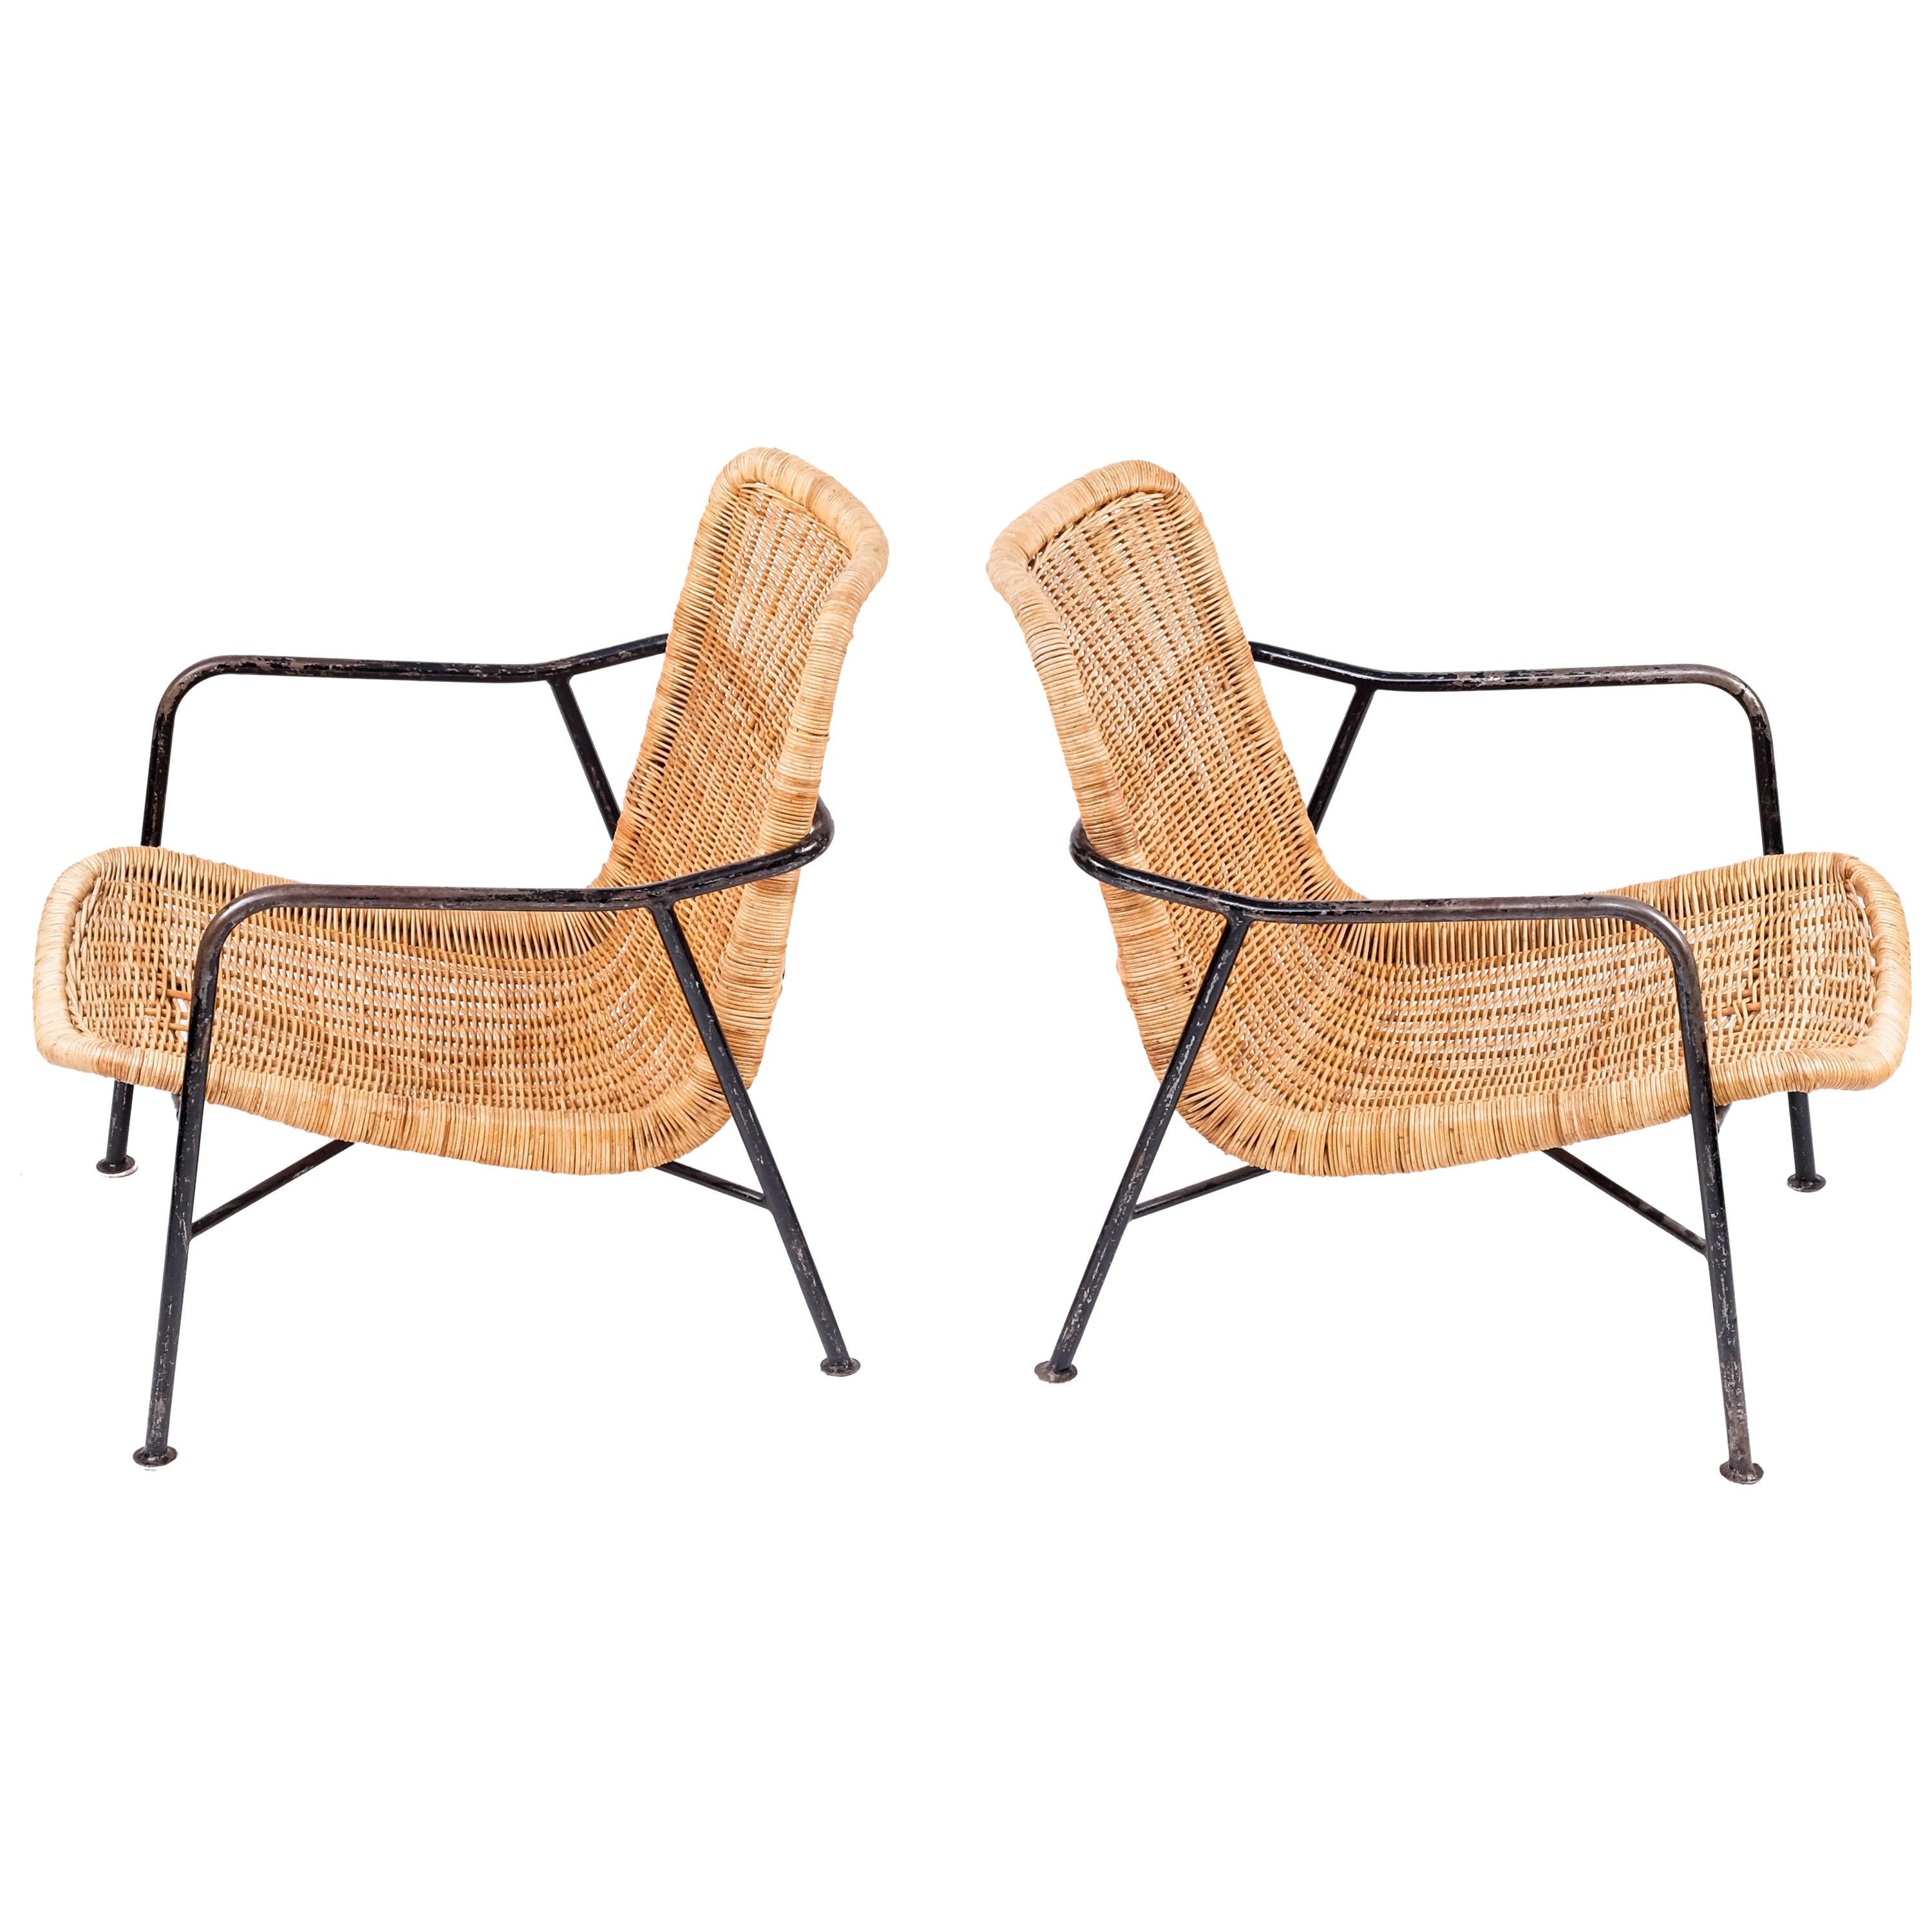 Rare Pair of Swedish Rattan Chairs, 1960s